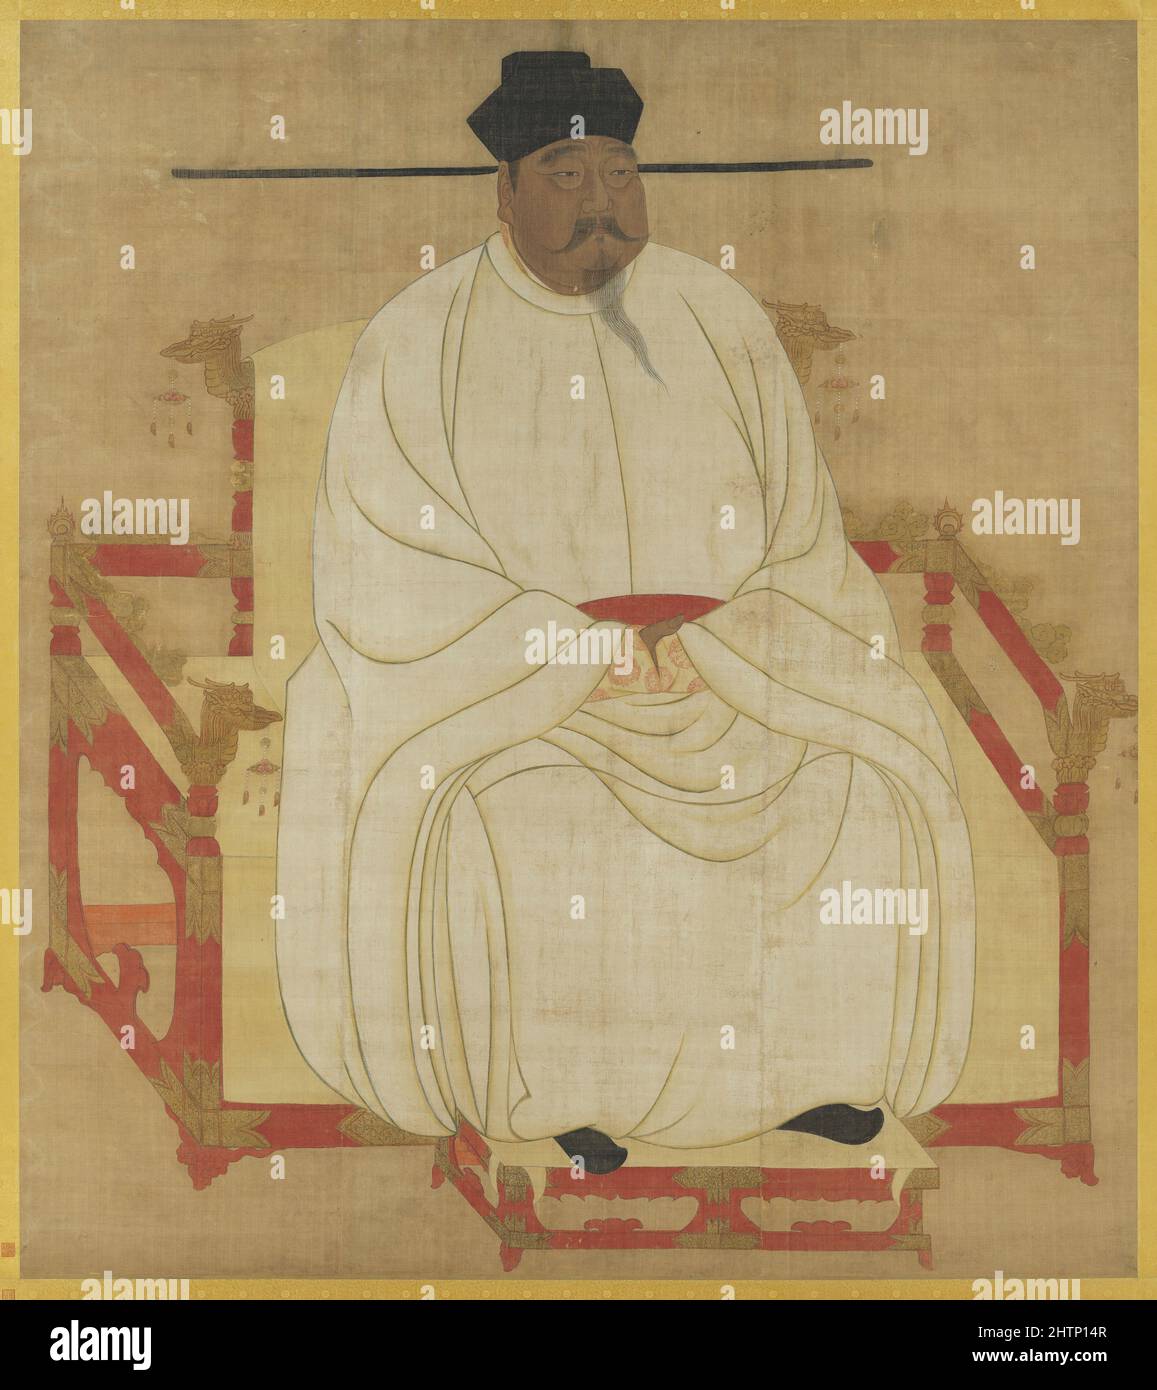 Portrait de l'empereur Taizu de Song (927 - 976), fondateur et premier empereur de la dynastie Song de Chine Banque D'Images